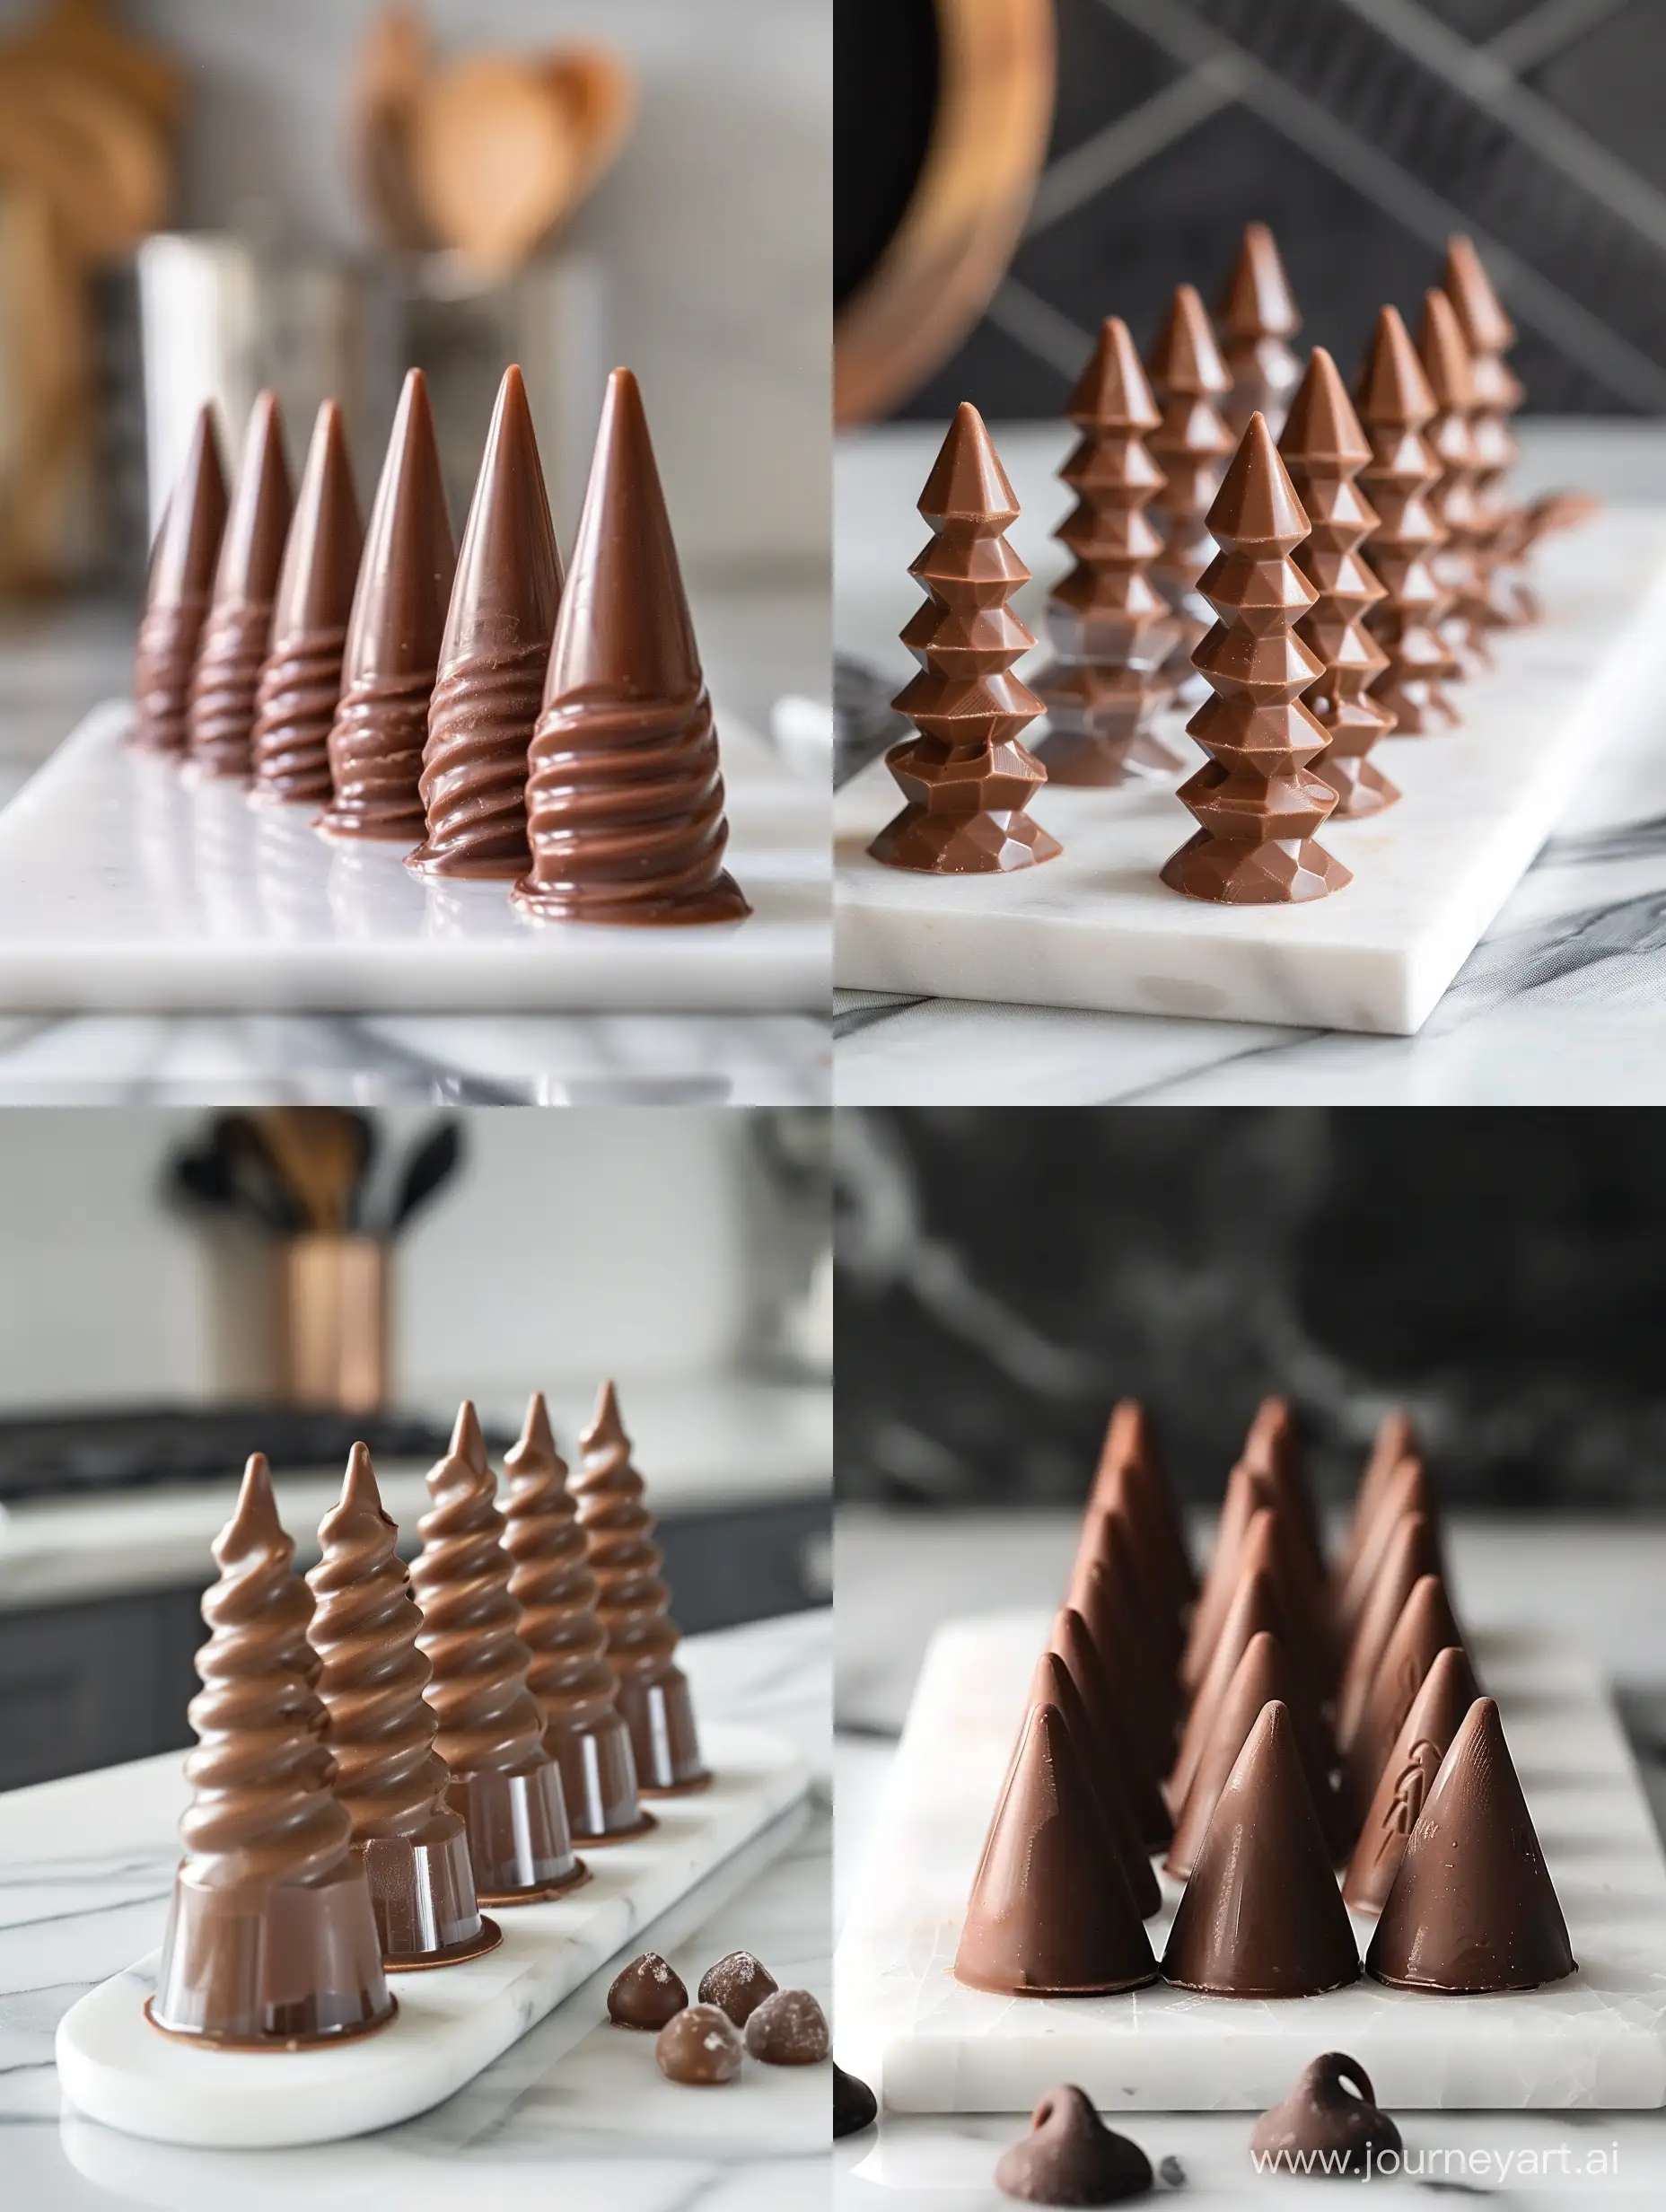 7 шоколадных конфет (трюфелей), которые стоят вертикально на белой кухонной доске , и имеют конусовидную четкую форму